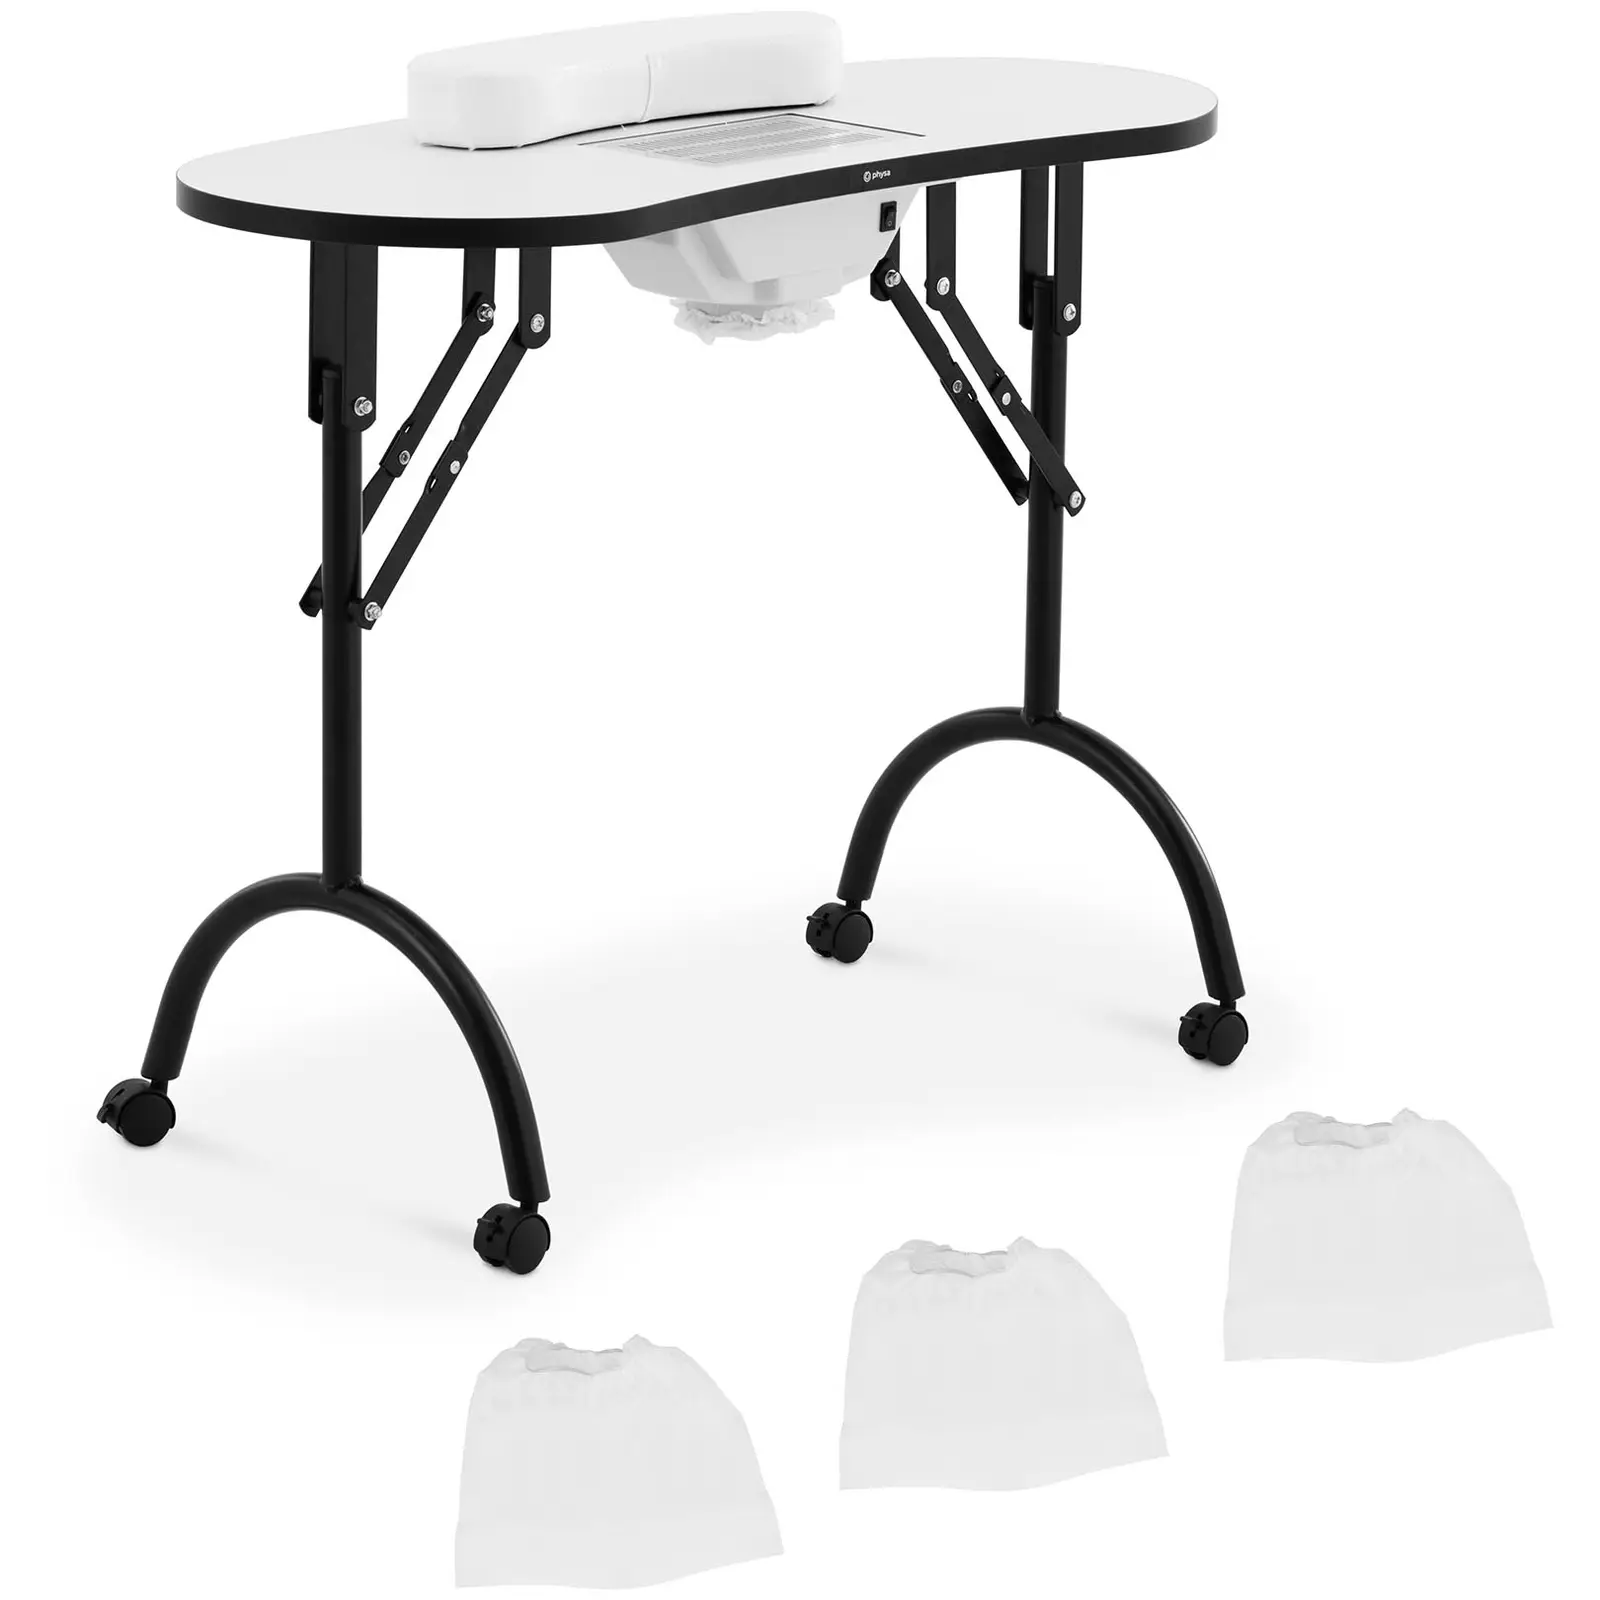 Manikiūro stalas - sulankstomas - baltas - 4 ratukai - ištraukimas